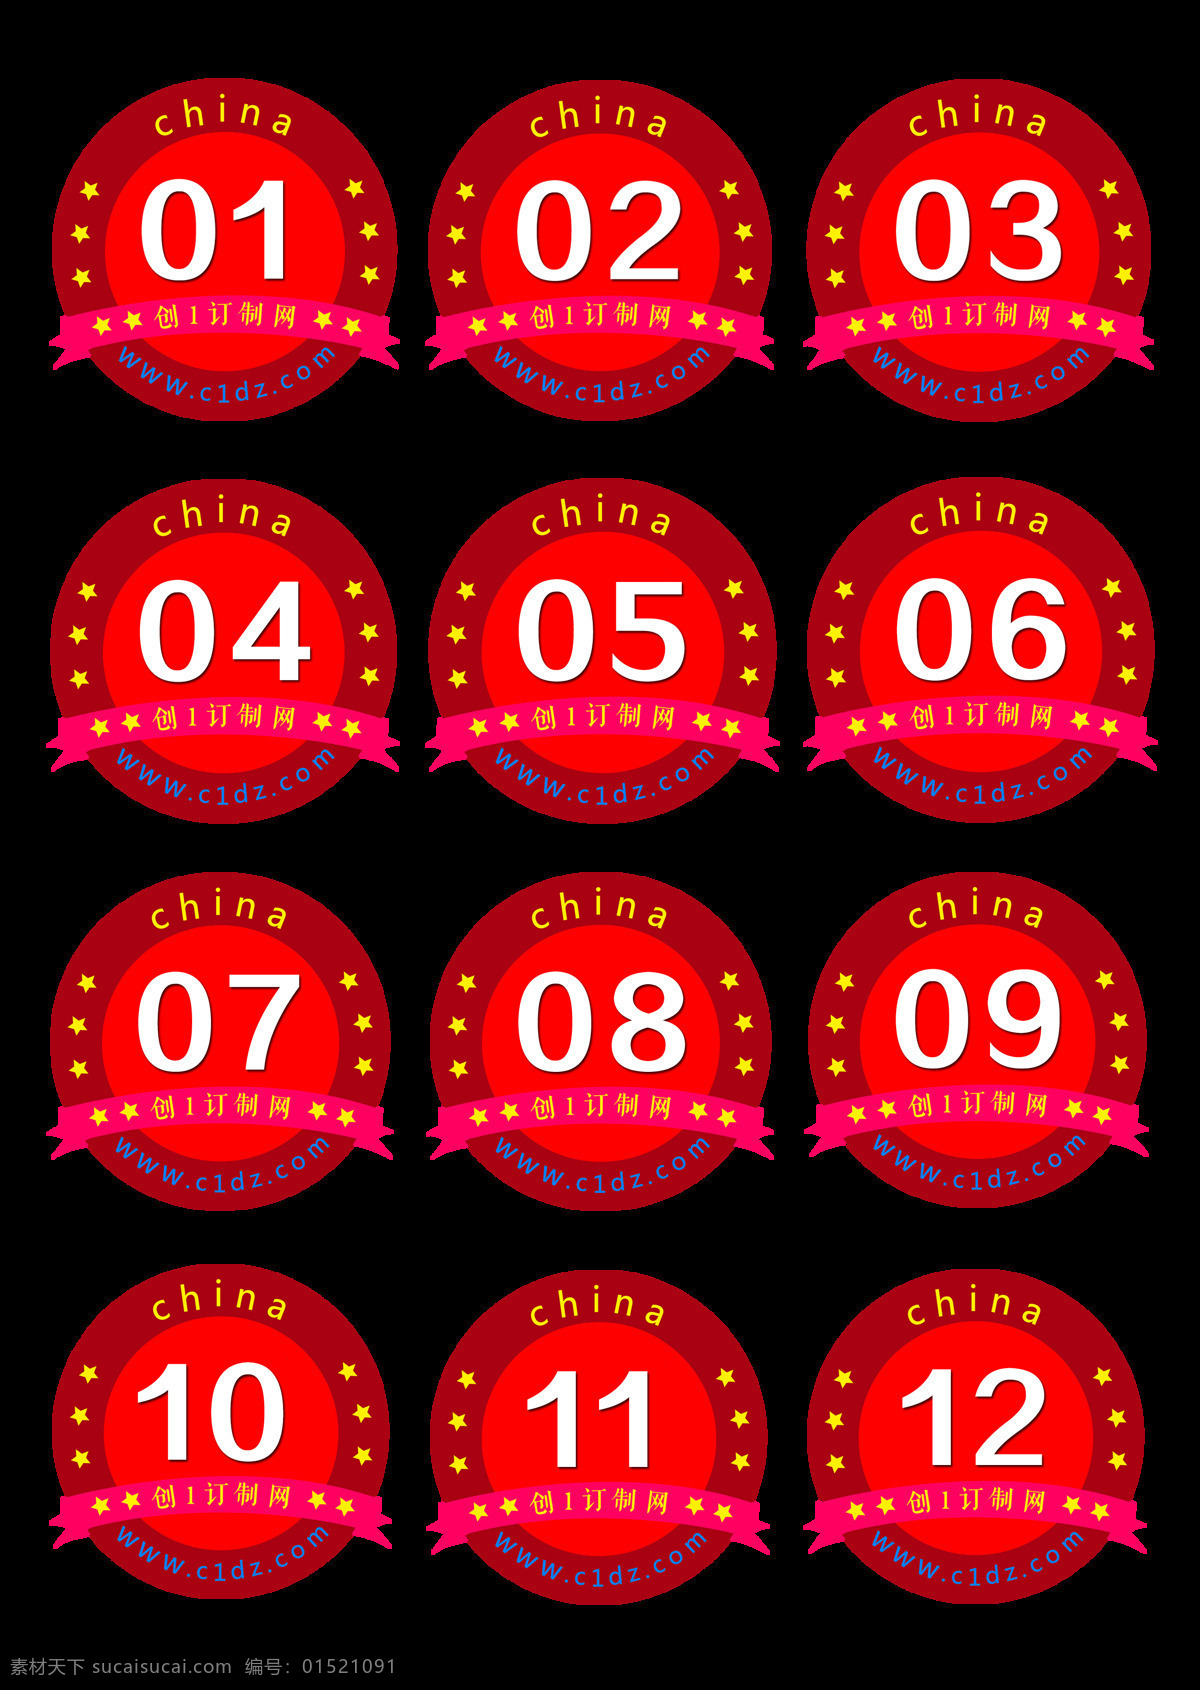 号码牌 logo 广告设计模板 红色